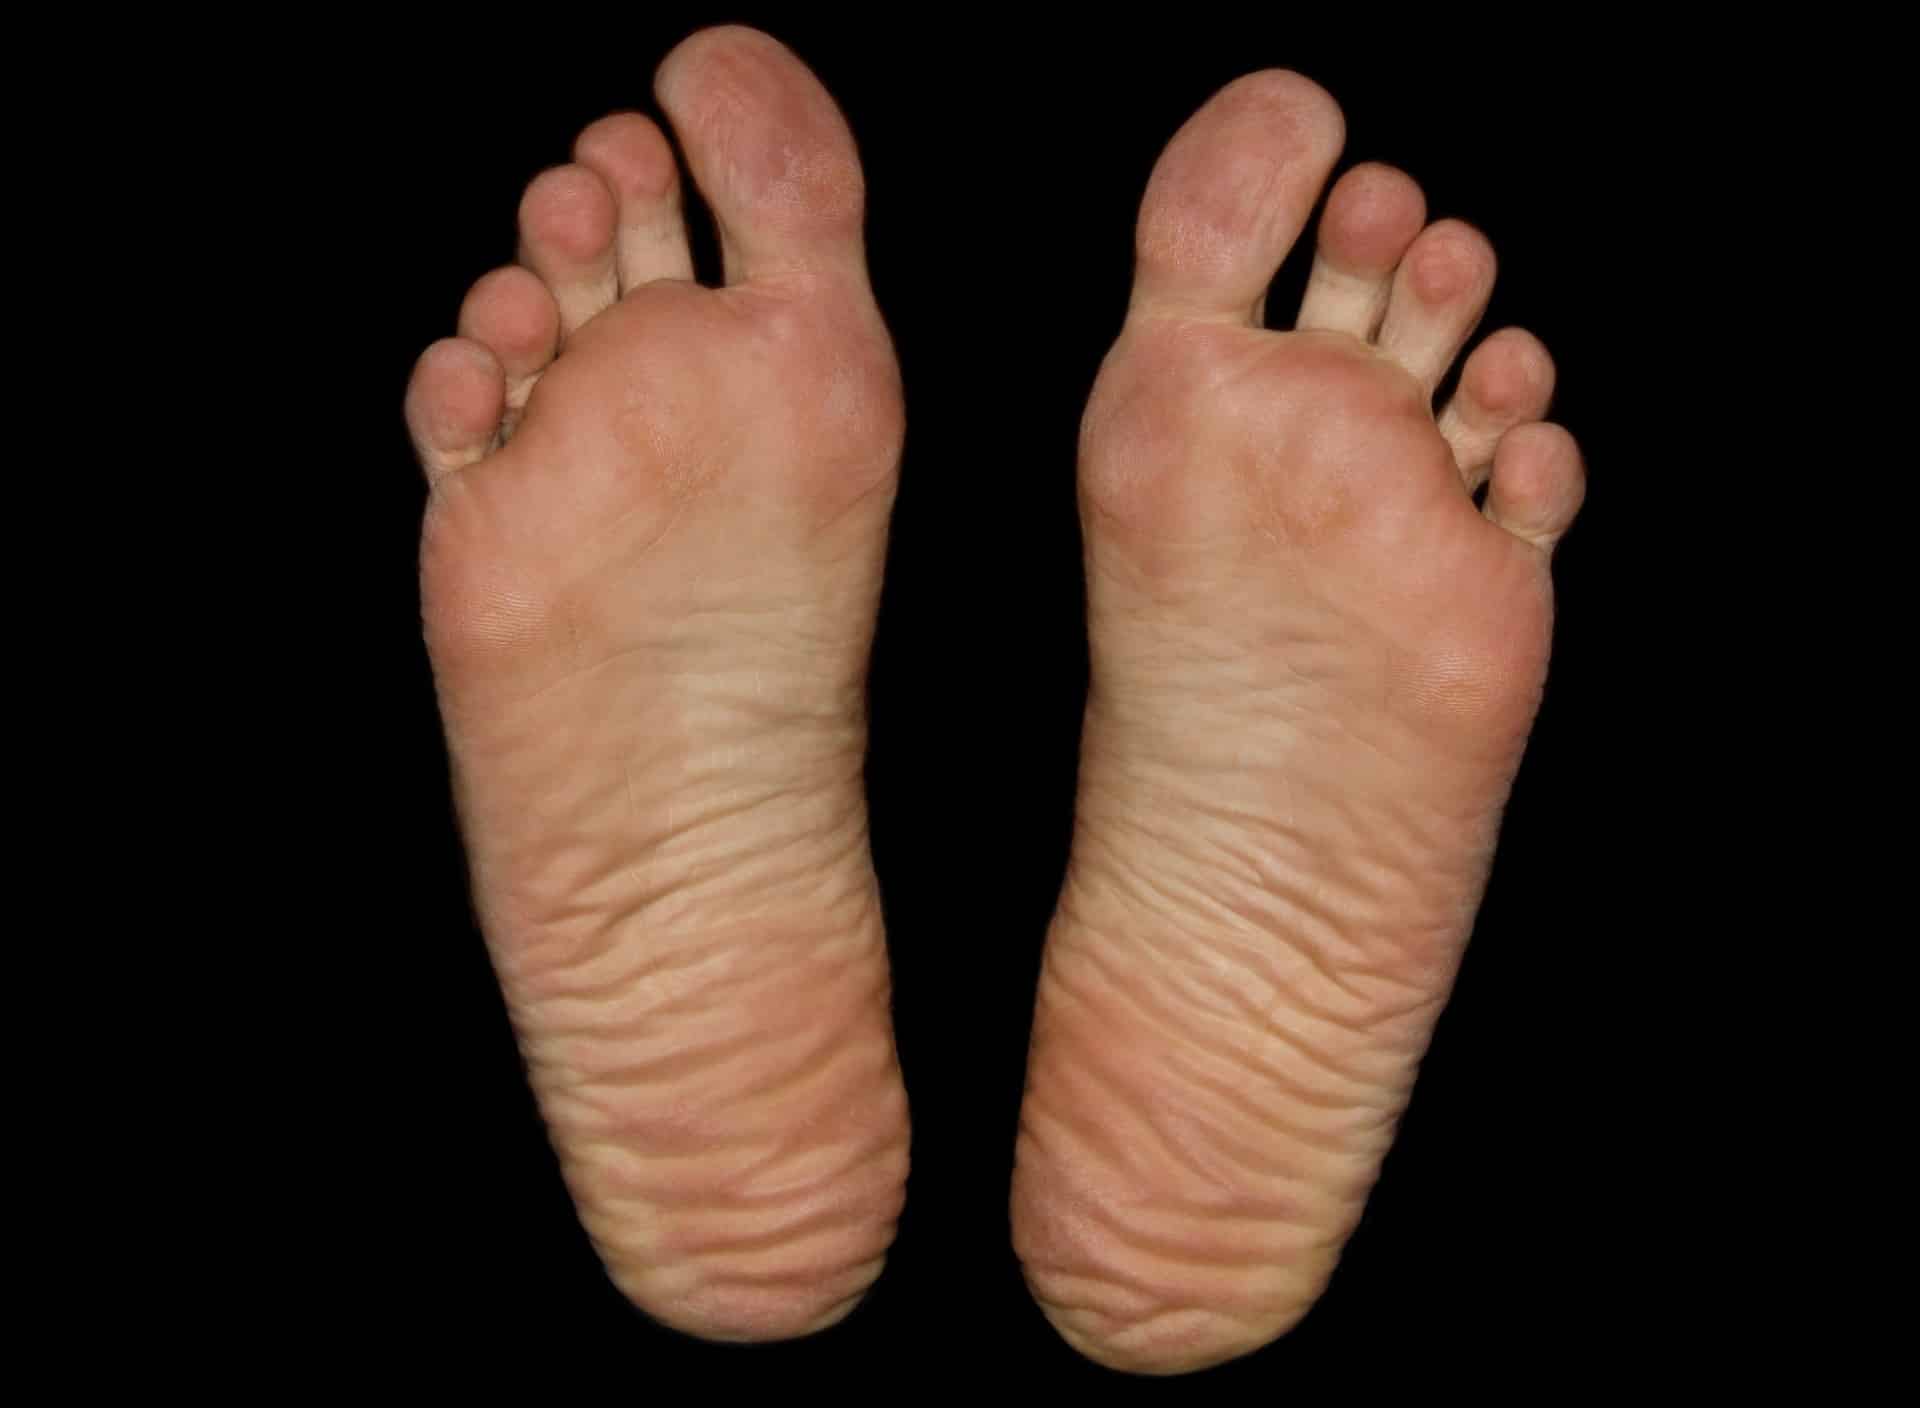 Fußgeschwür (Malum perforans) - Ursachen und Behandlung